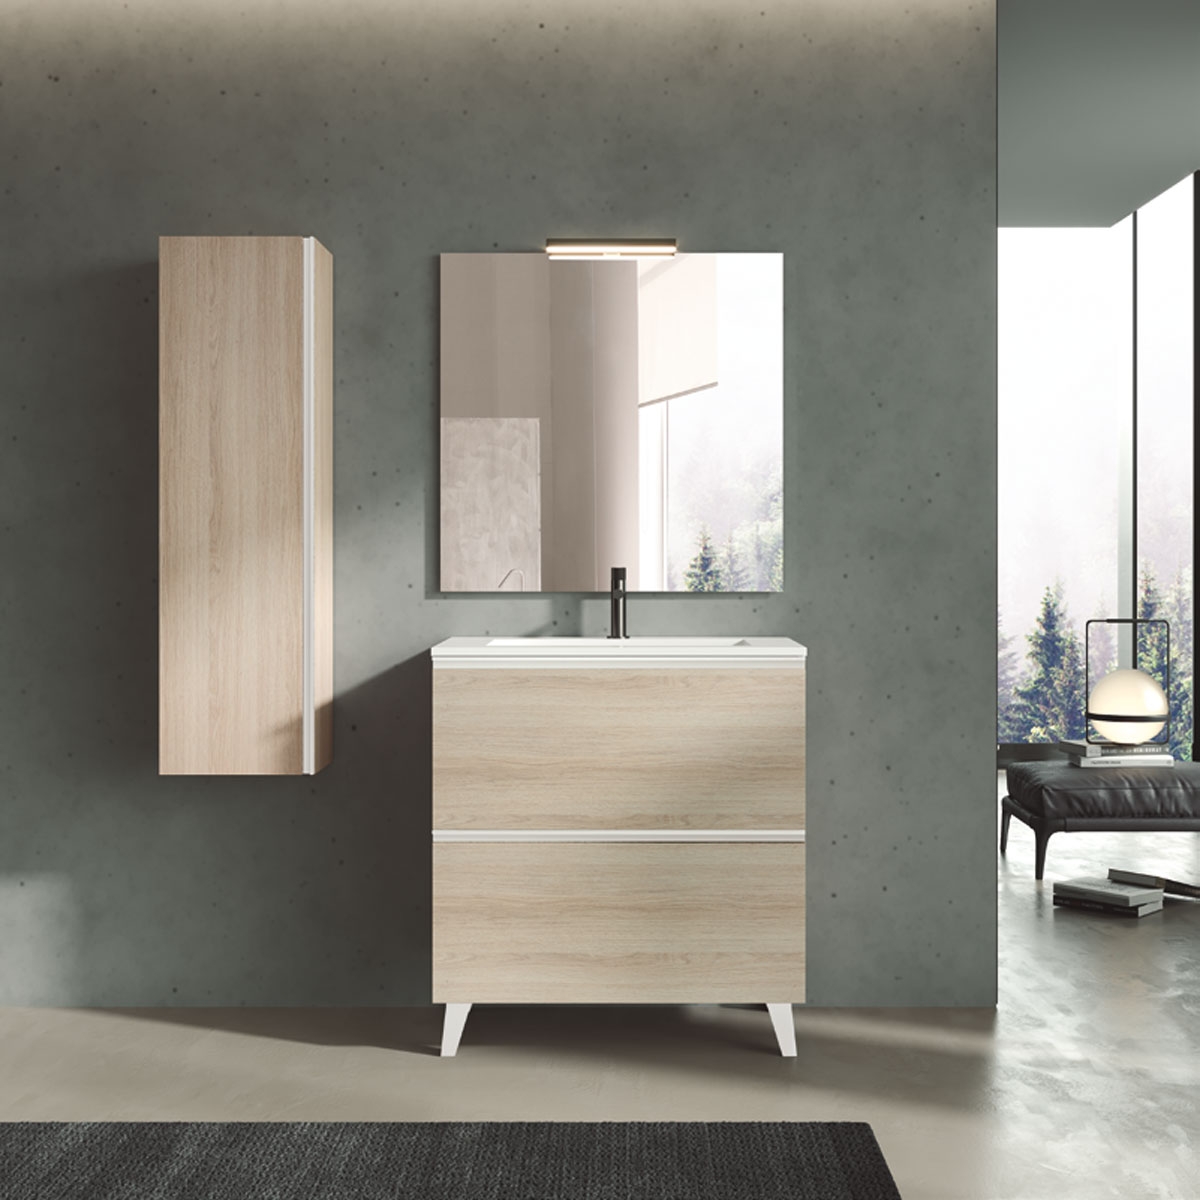 Mueble de baño con lavabo integrado, diseño moderno desde el suelo